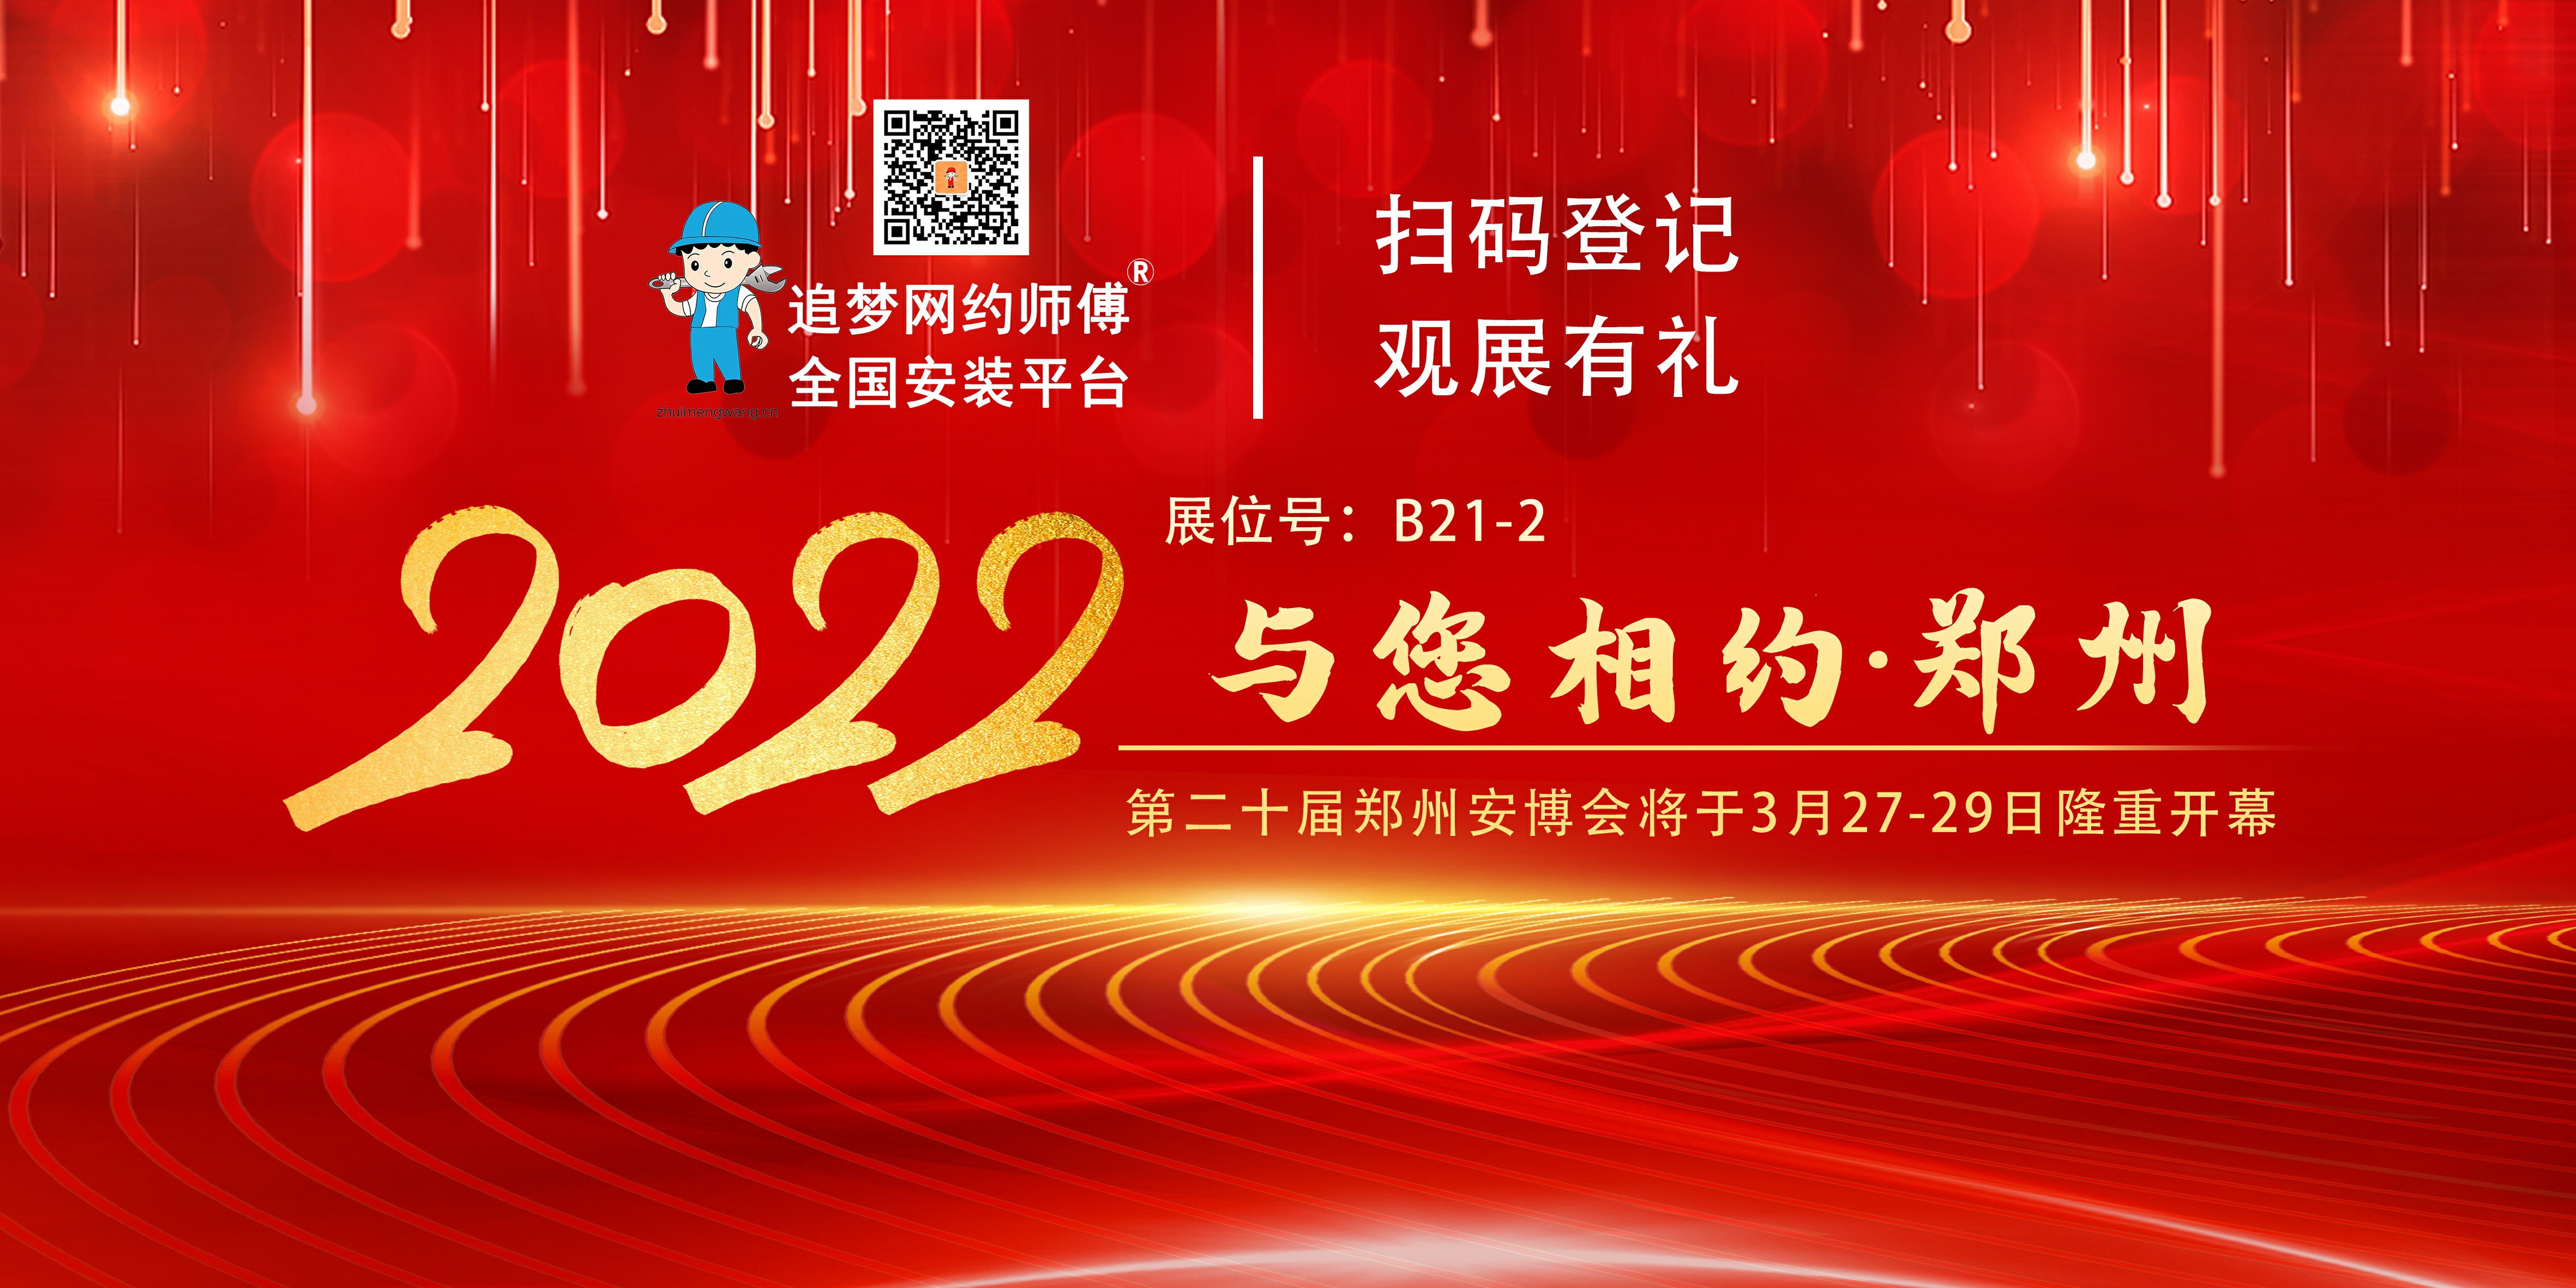 2022 第二十届郑州安博会将在郑州隆重开幕